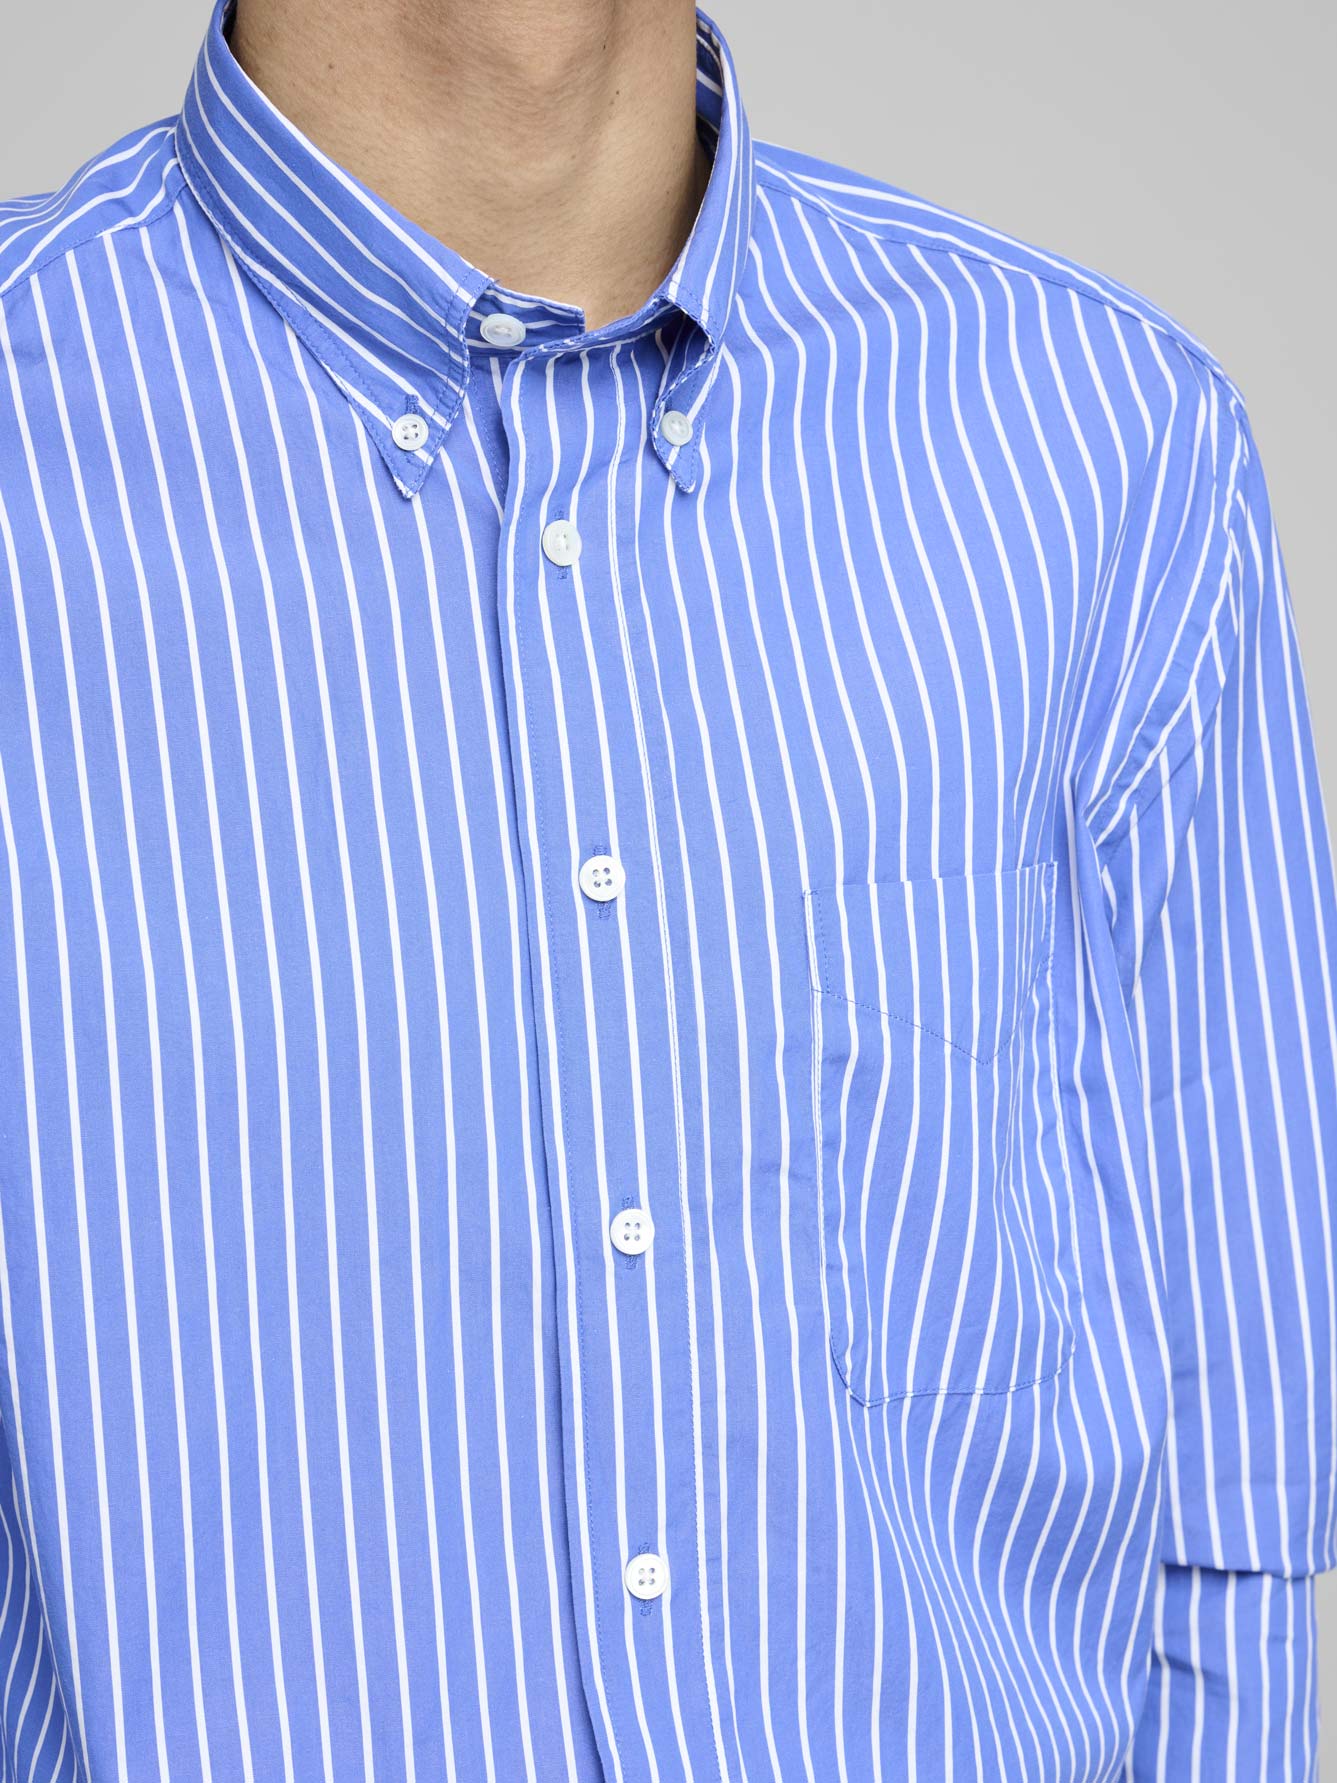 American BD Shirt, Royal Blue & White Stripe